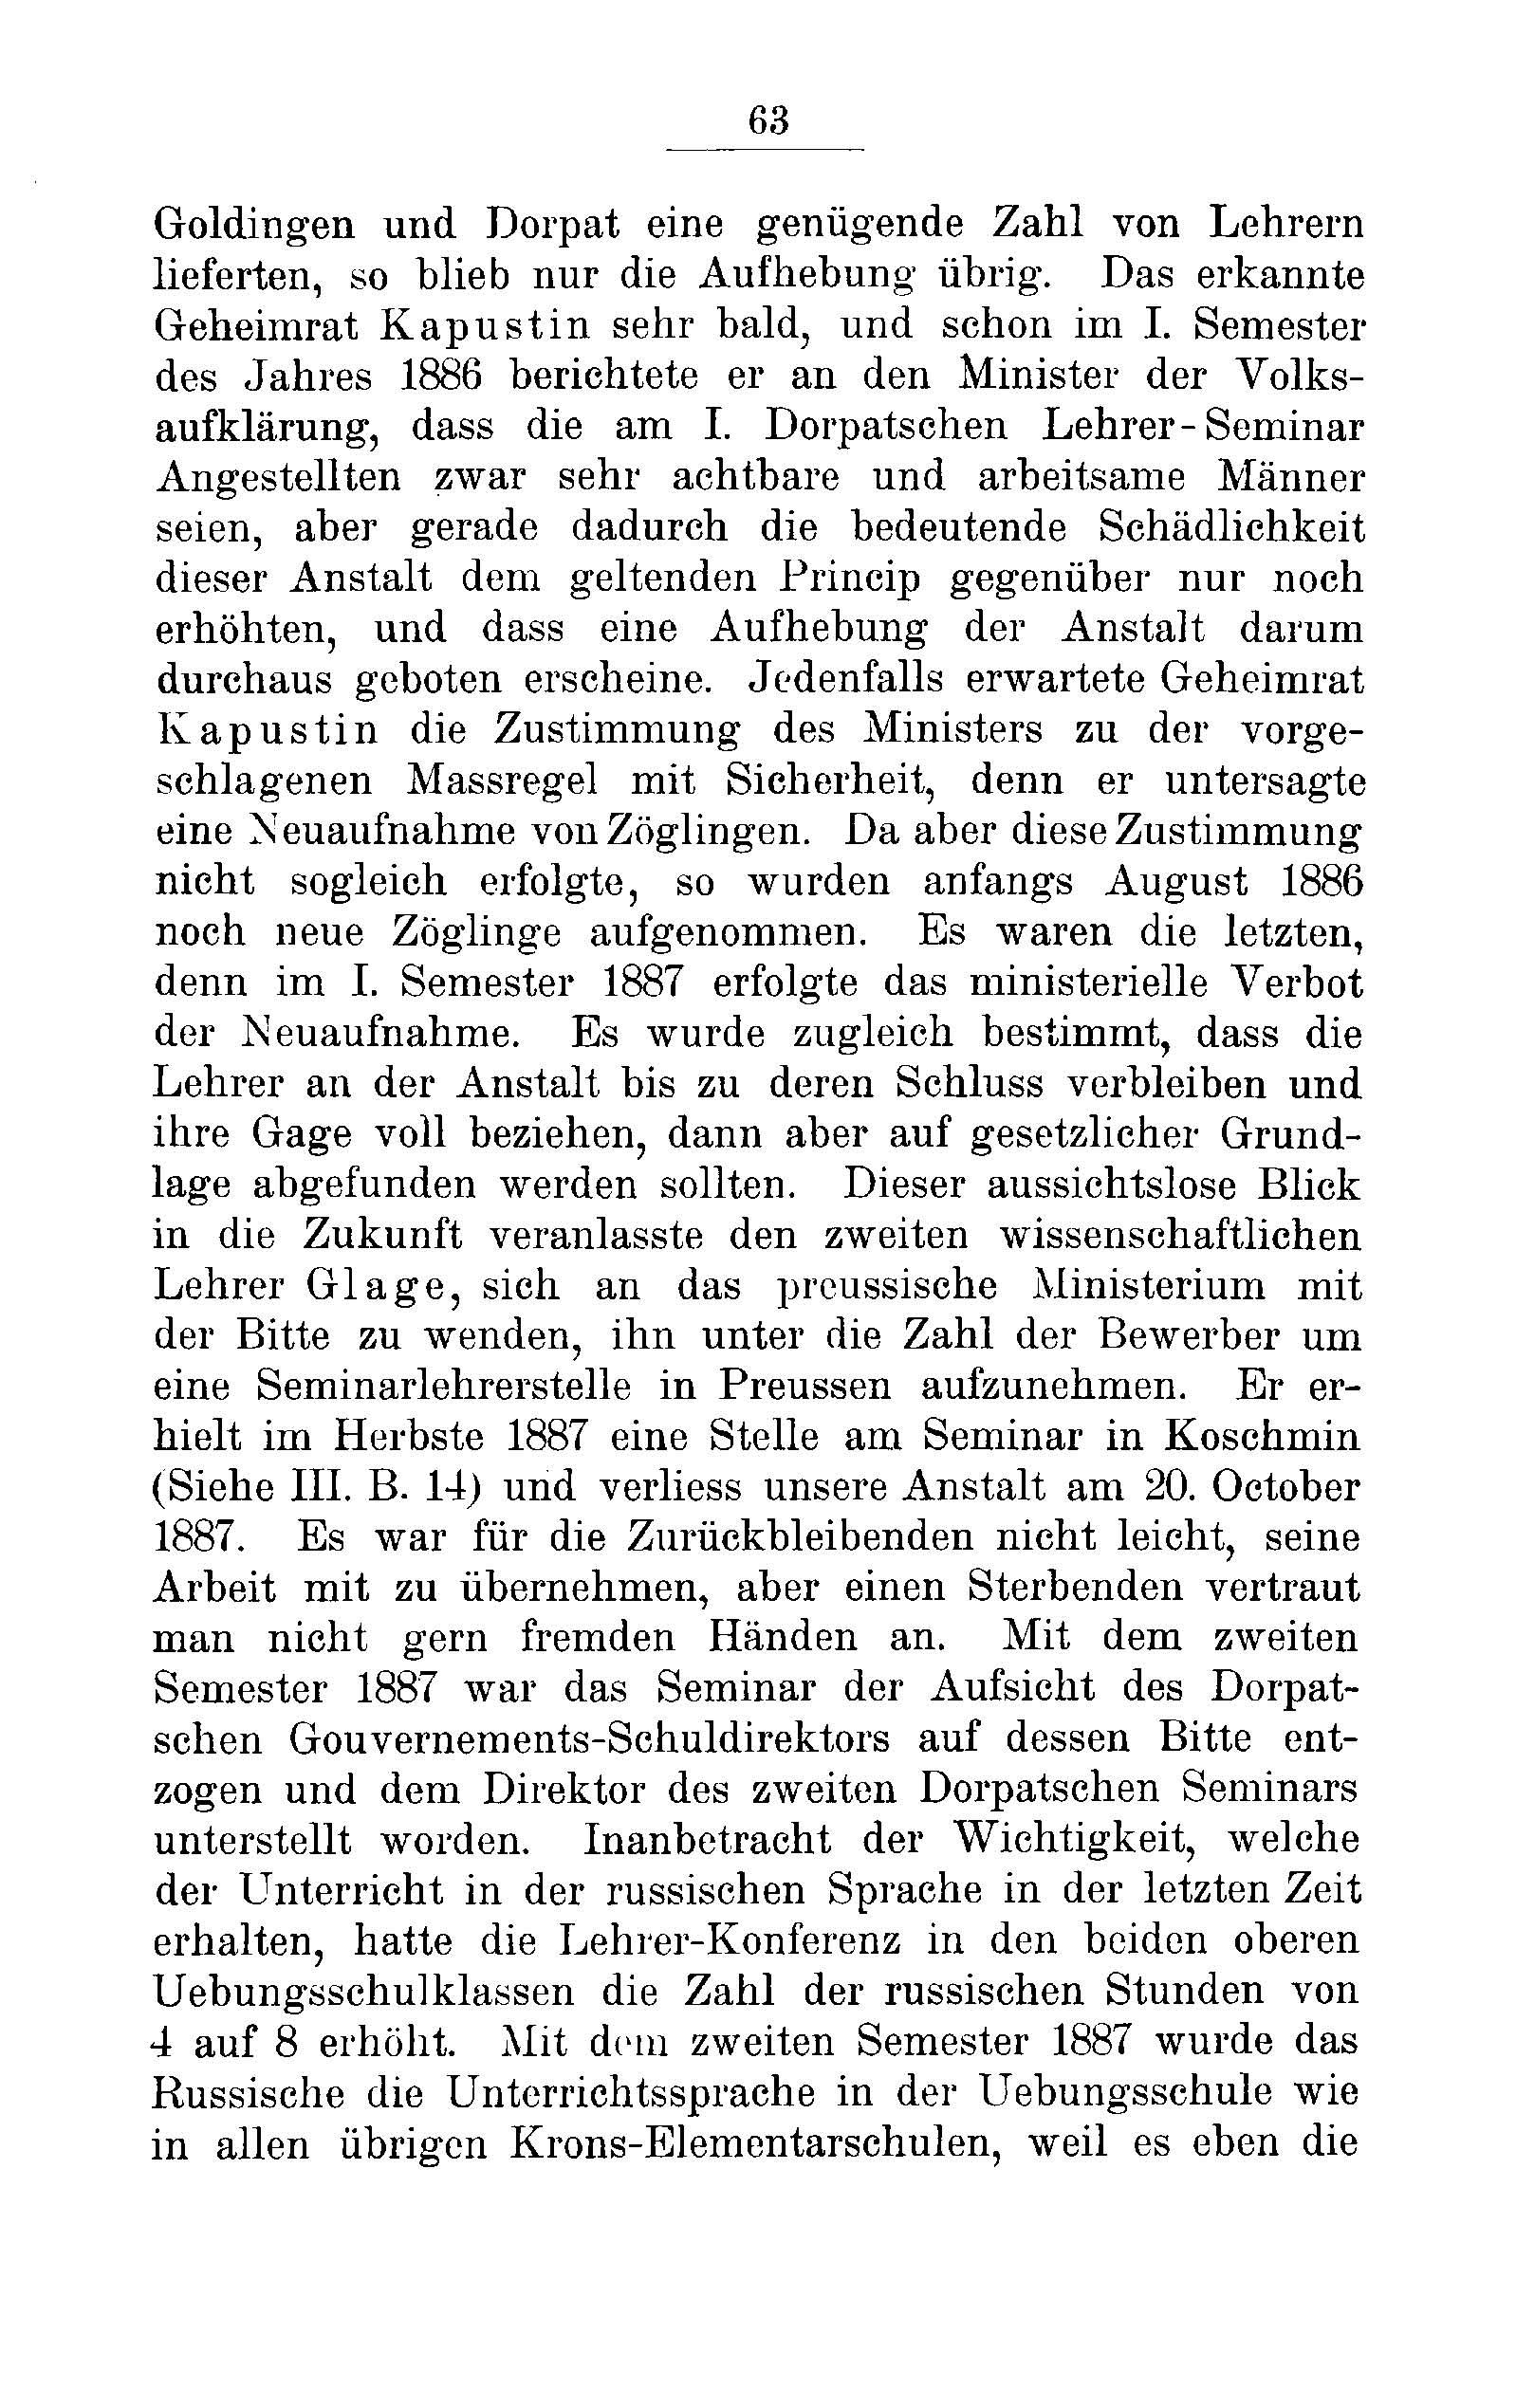 Das Erste Dorpatsche Lehrer-Seminar (1890) | 66. Main body of text